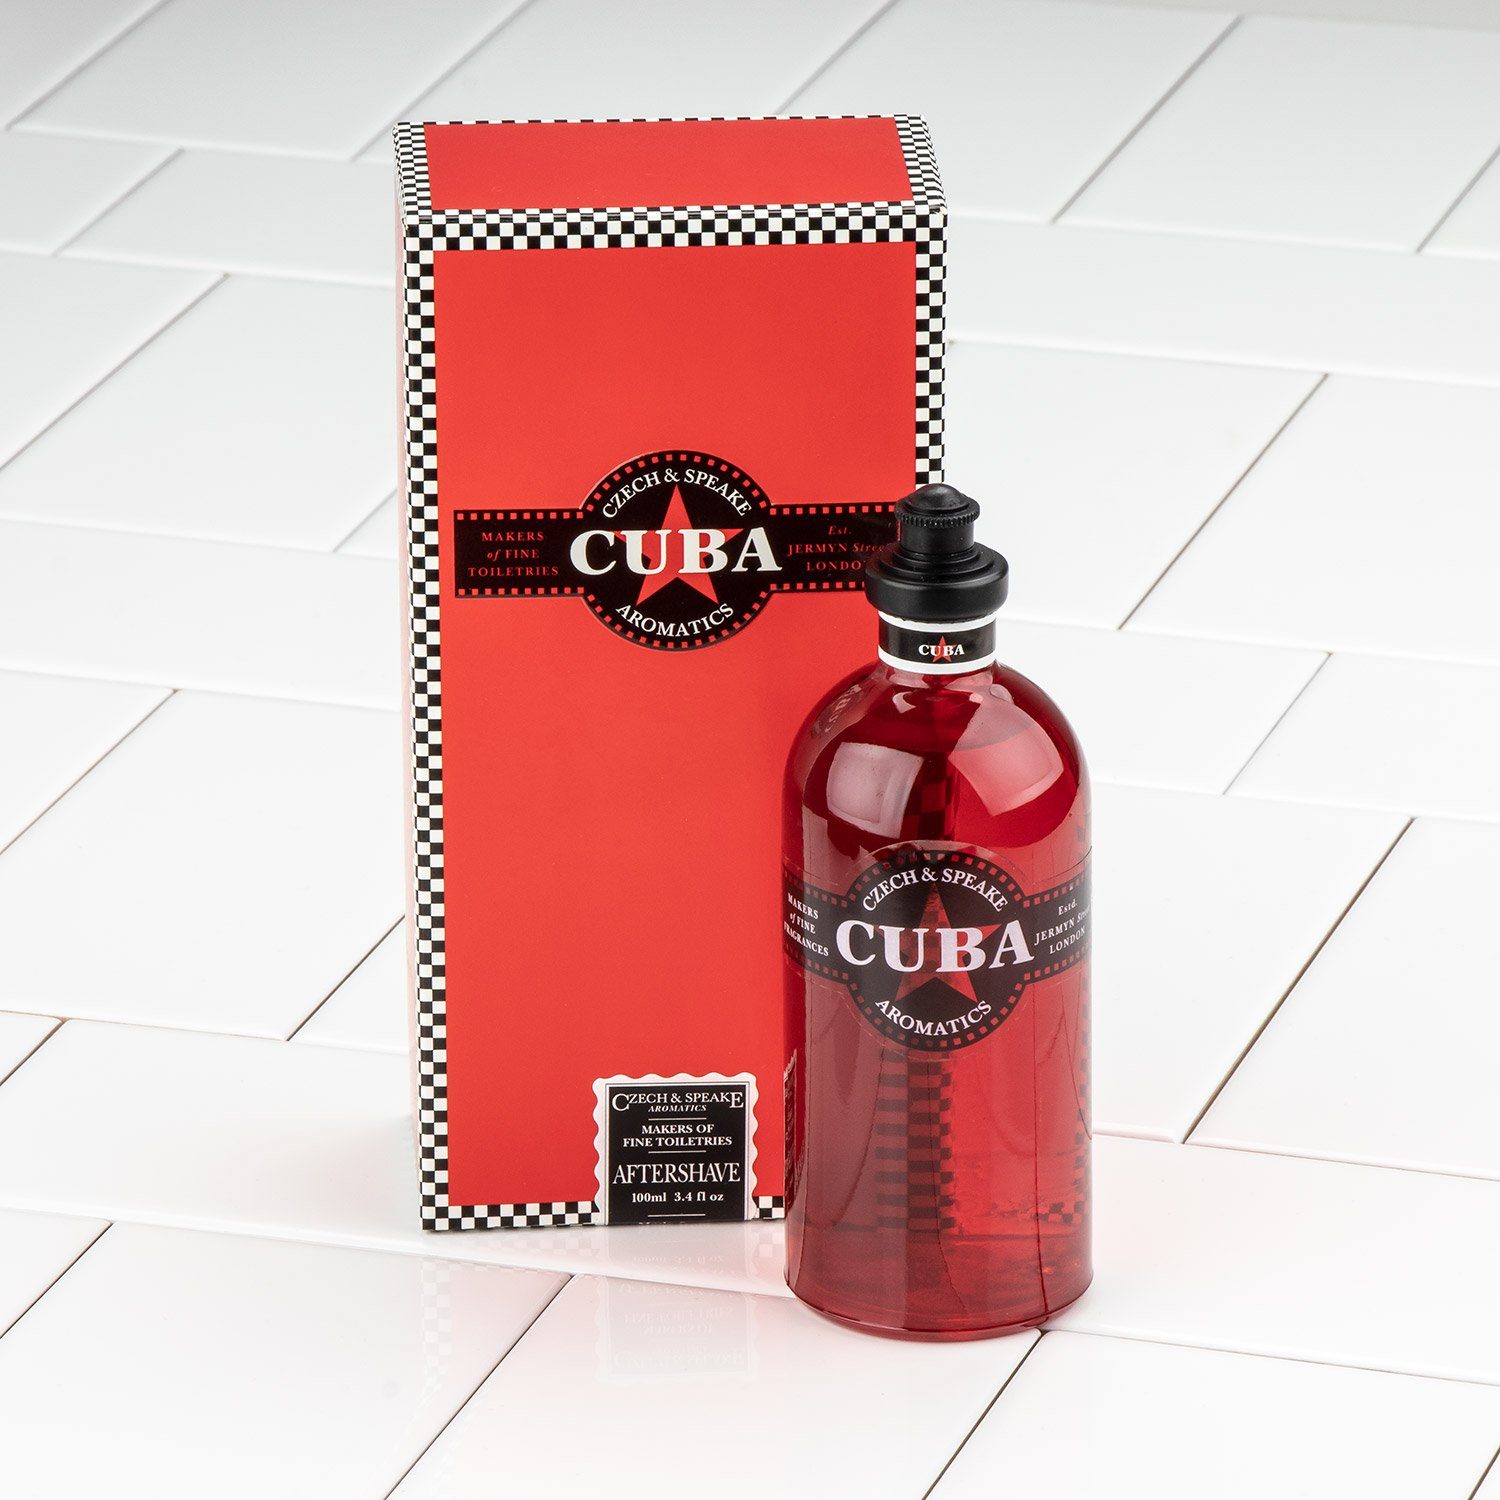 Czech & Speake Cuba Aftershave